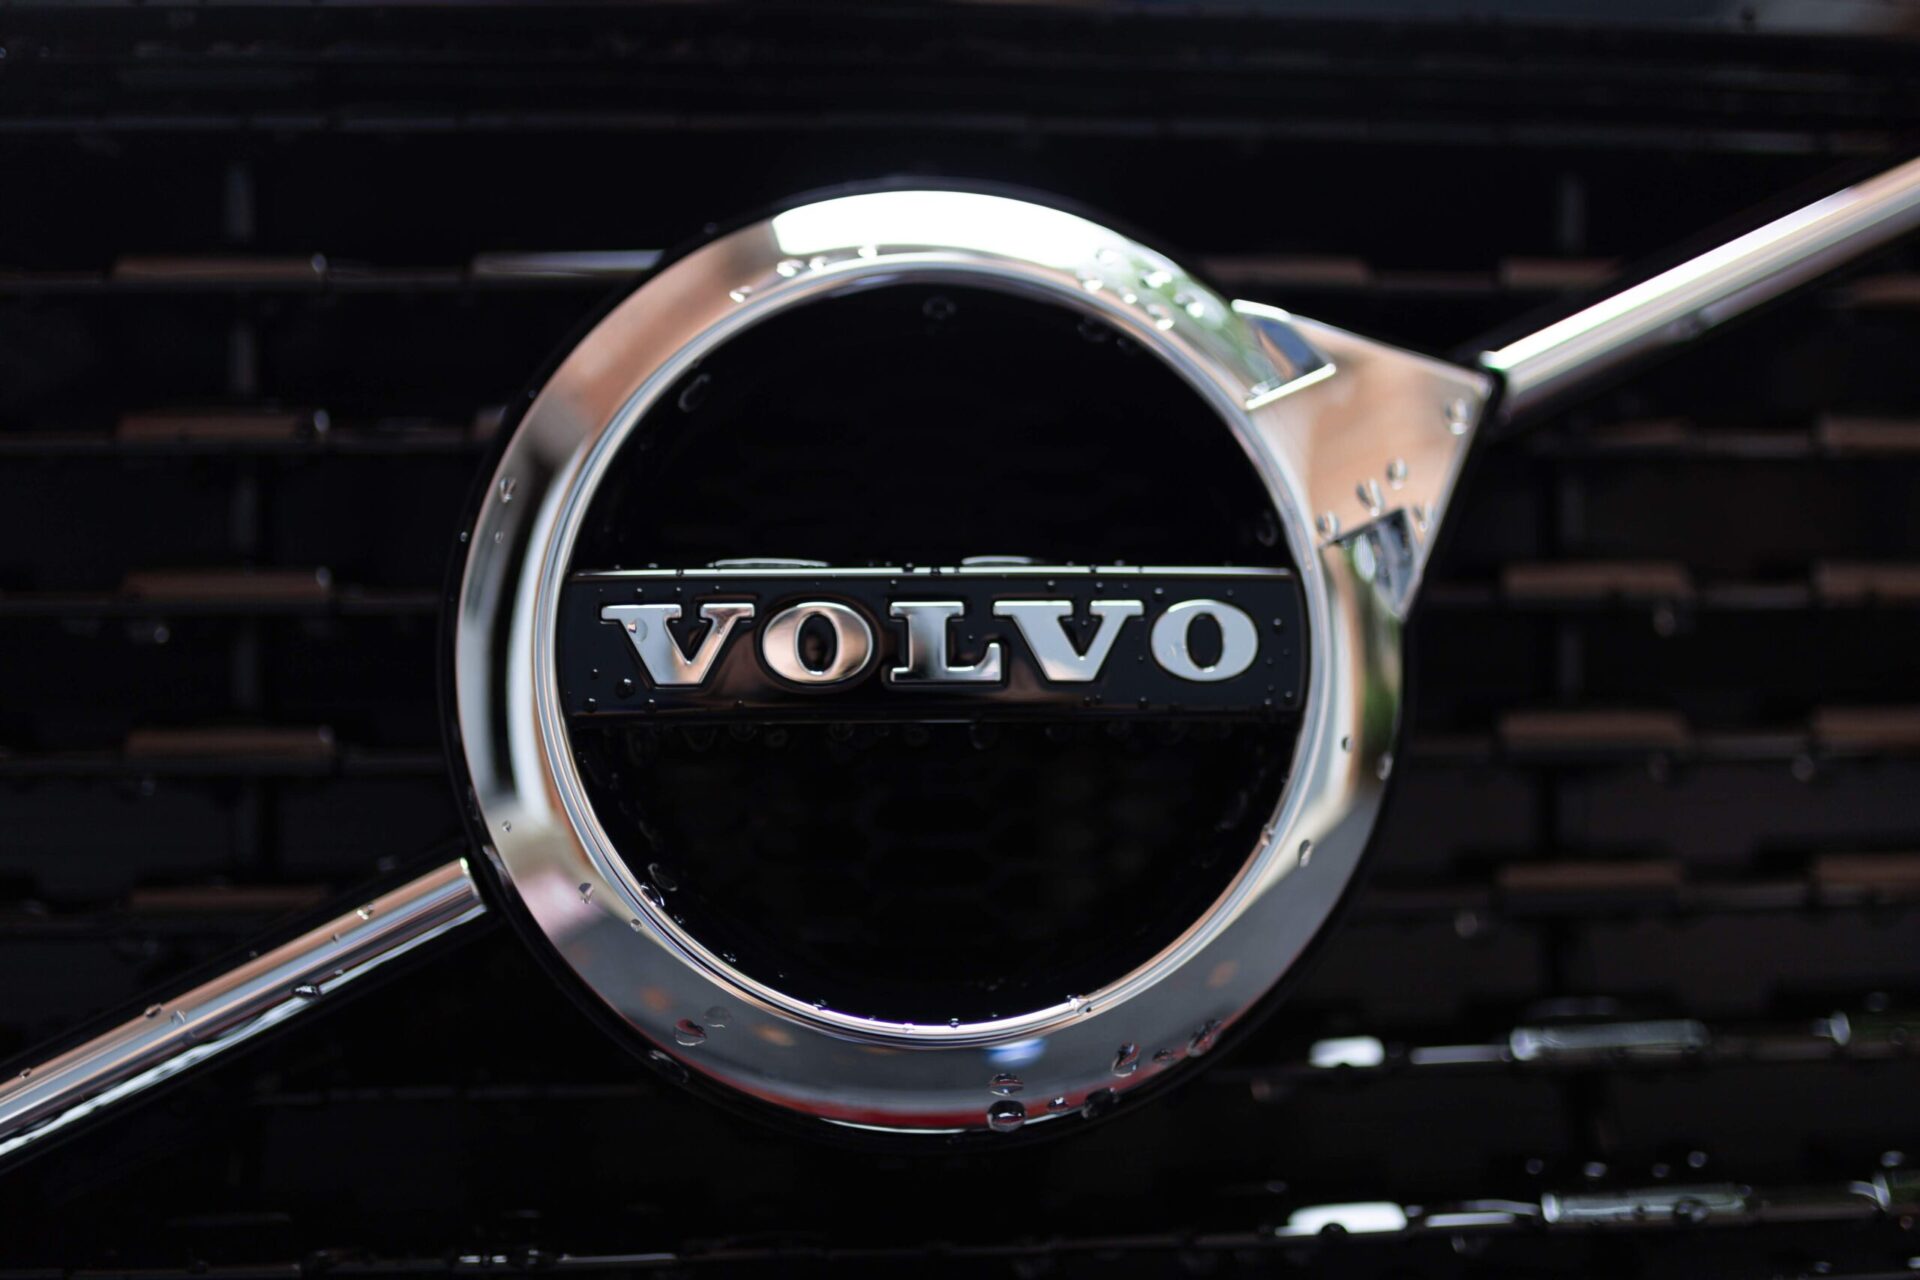 Компания Volvo попала в скандал из-за украденной музыки в своей рекламе в Китае